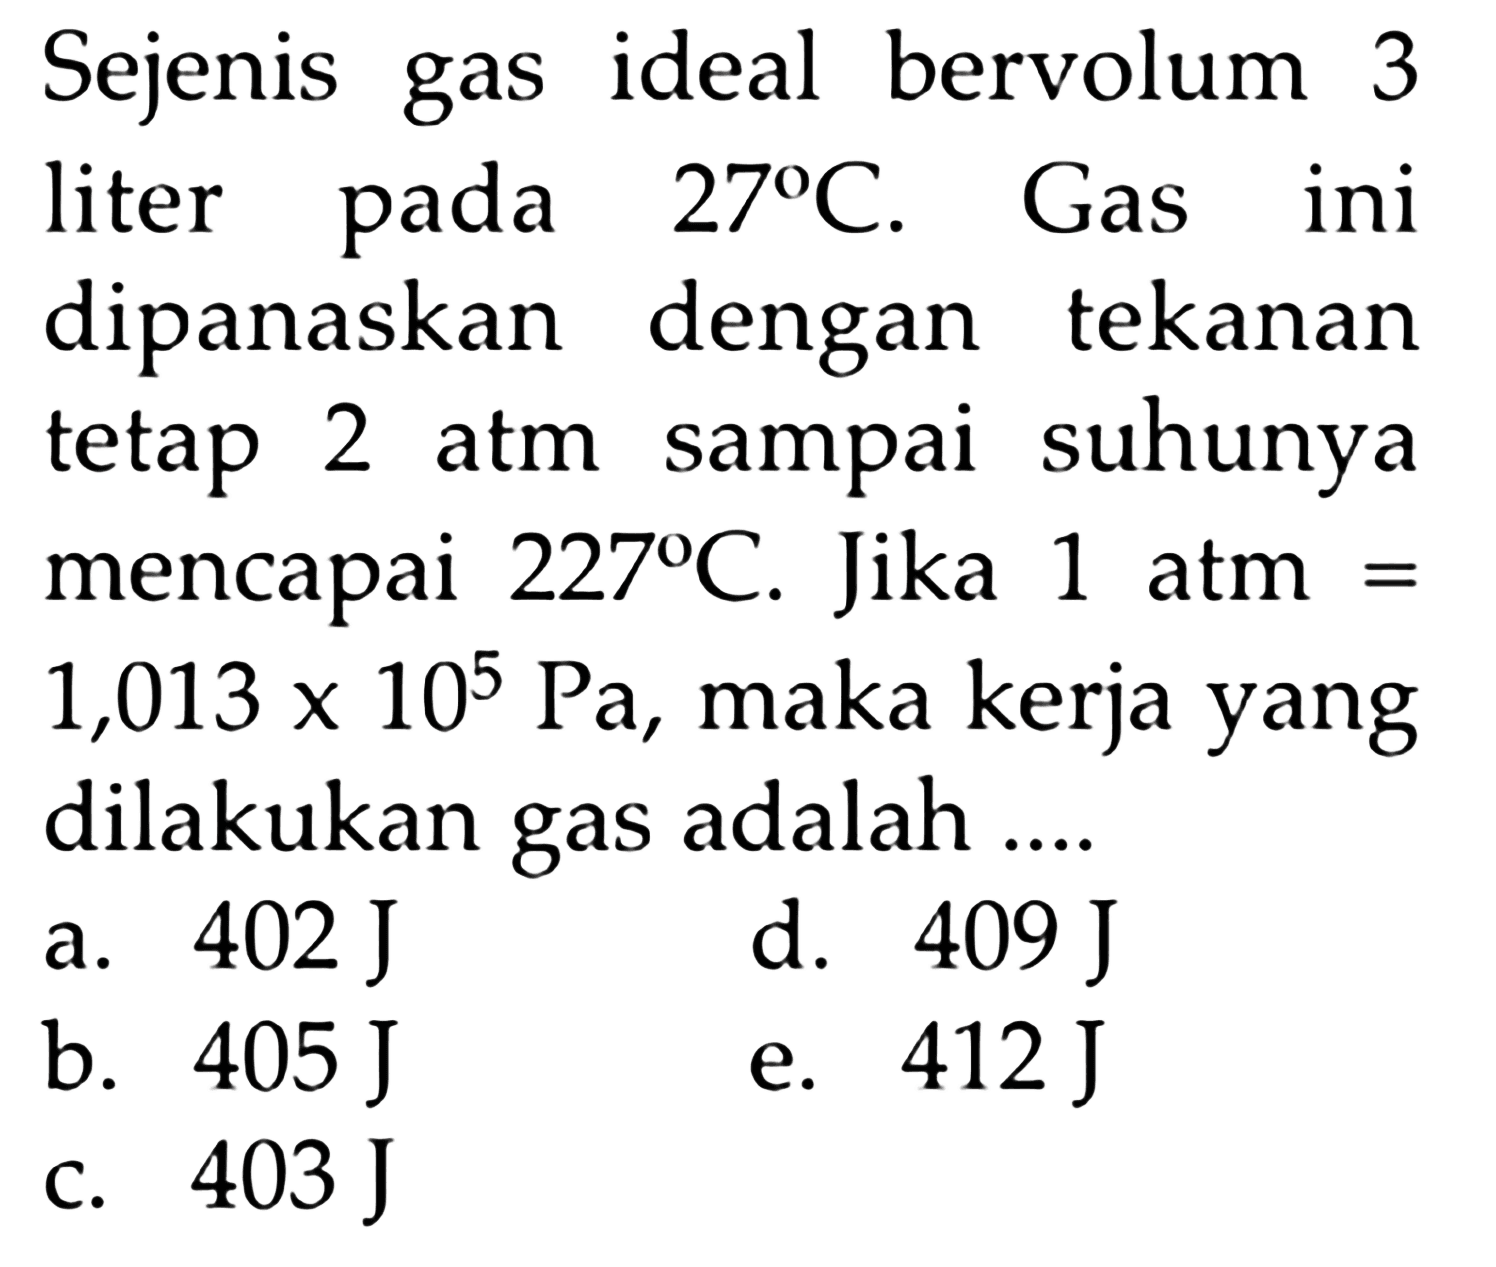 Sejenis gas ideal bervolum 3 liter pada 27 C. Gas ini dipanaskan dengan tekanan tetap 2 atm sampai suhunya mencapai  227 C. Jika 1 atm= 1,013 x 10^5 Pa, maka kerja yang dilakukan gas adalah ....